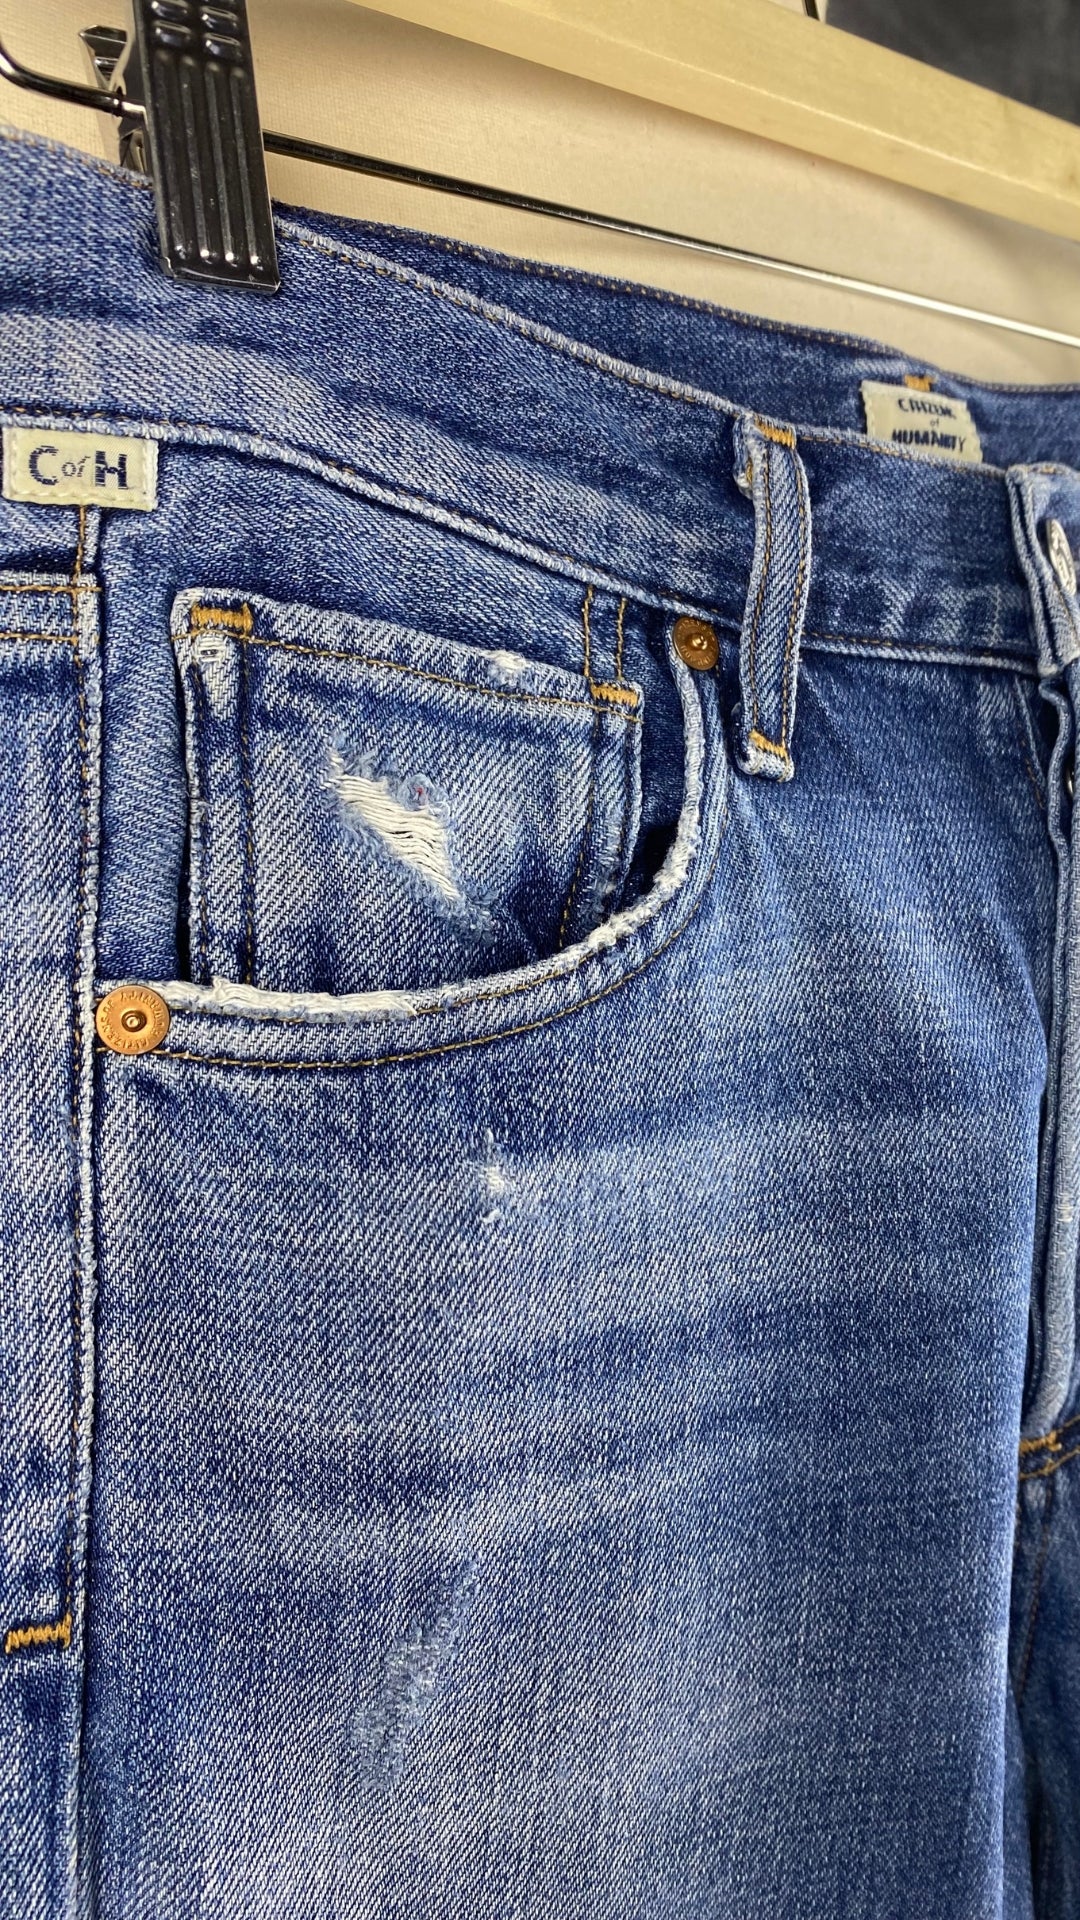 Jeans ajusté taille haute Citizens of Humanity, taille 23. Vue de la poche avant et le petit logo de la marque.